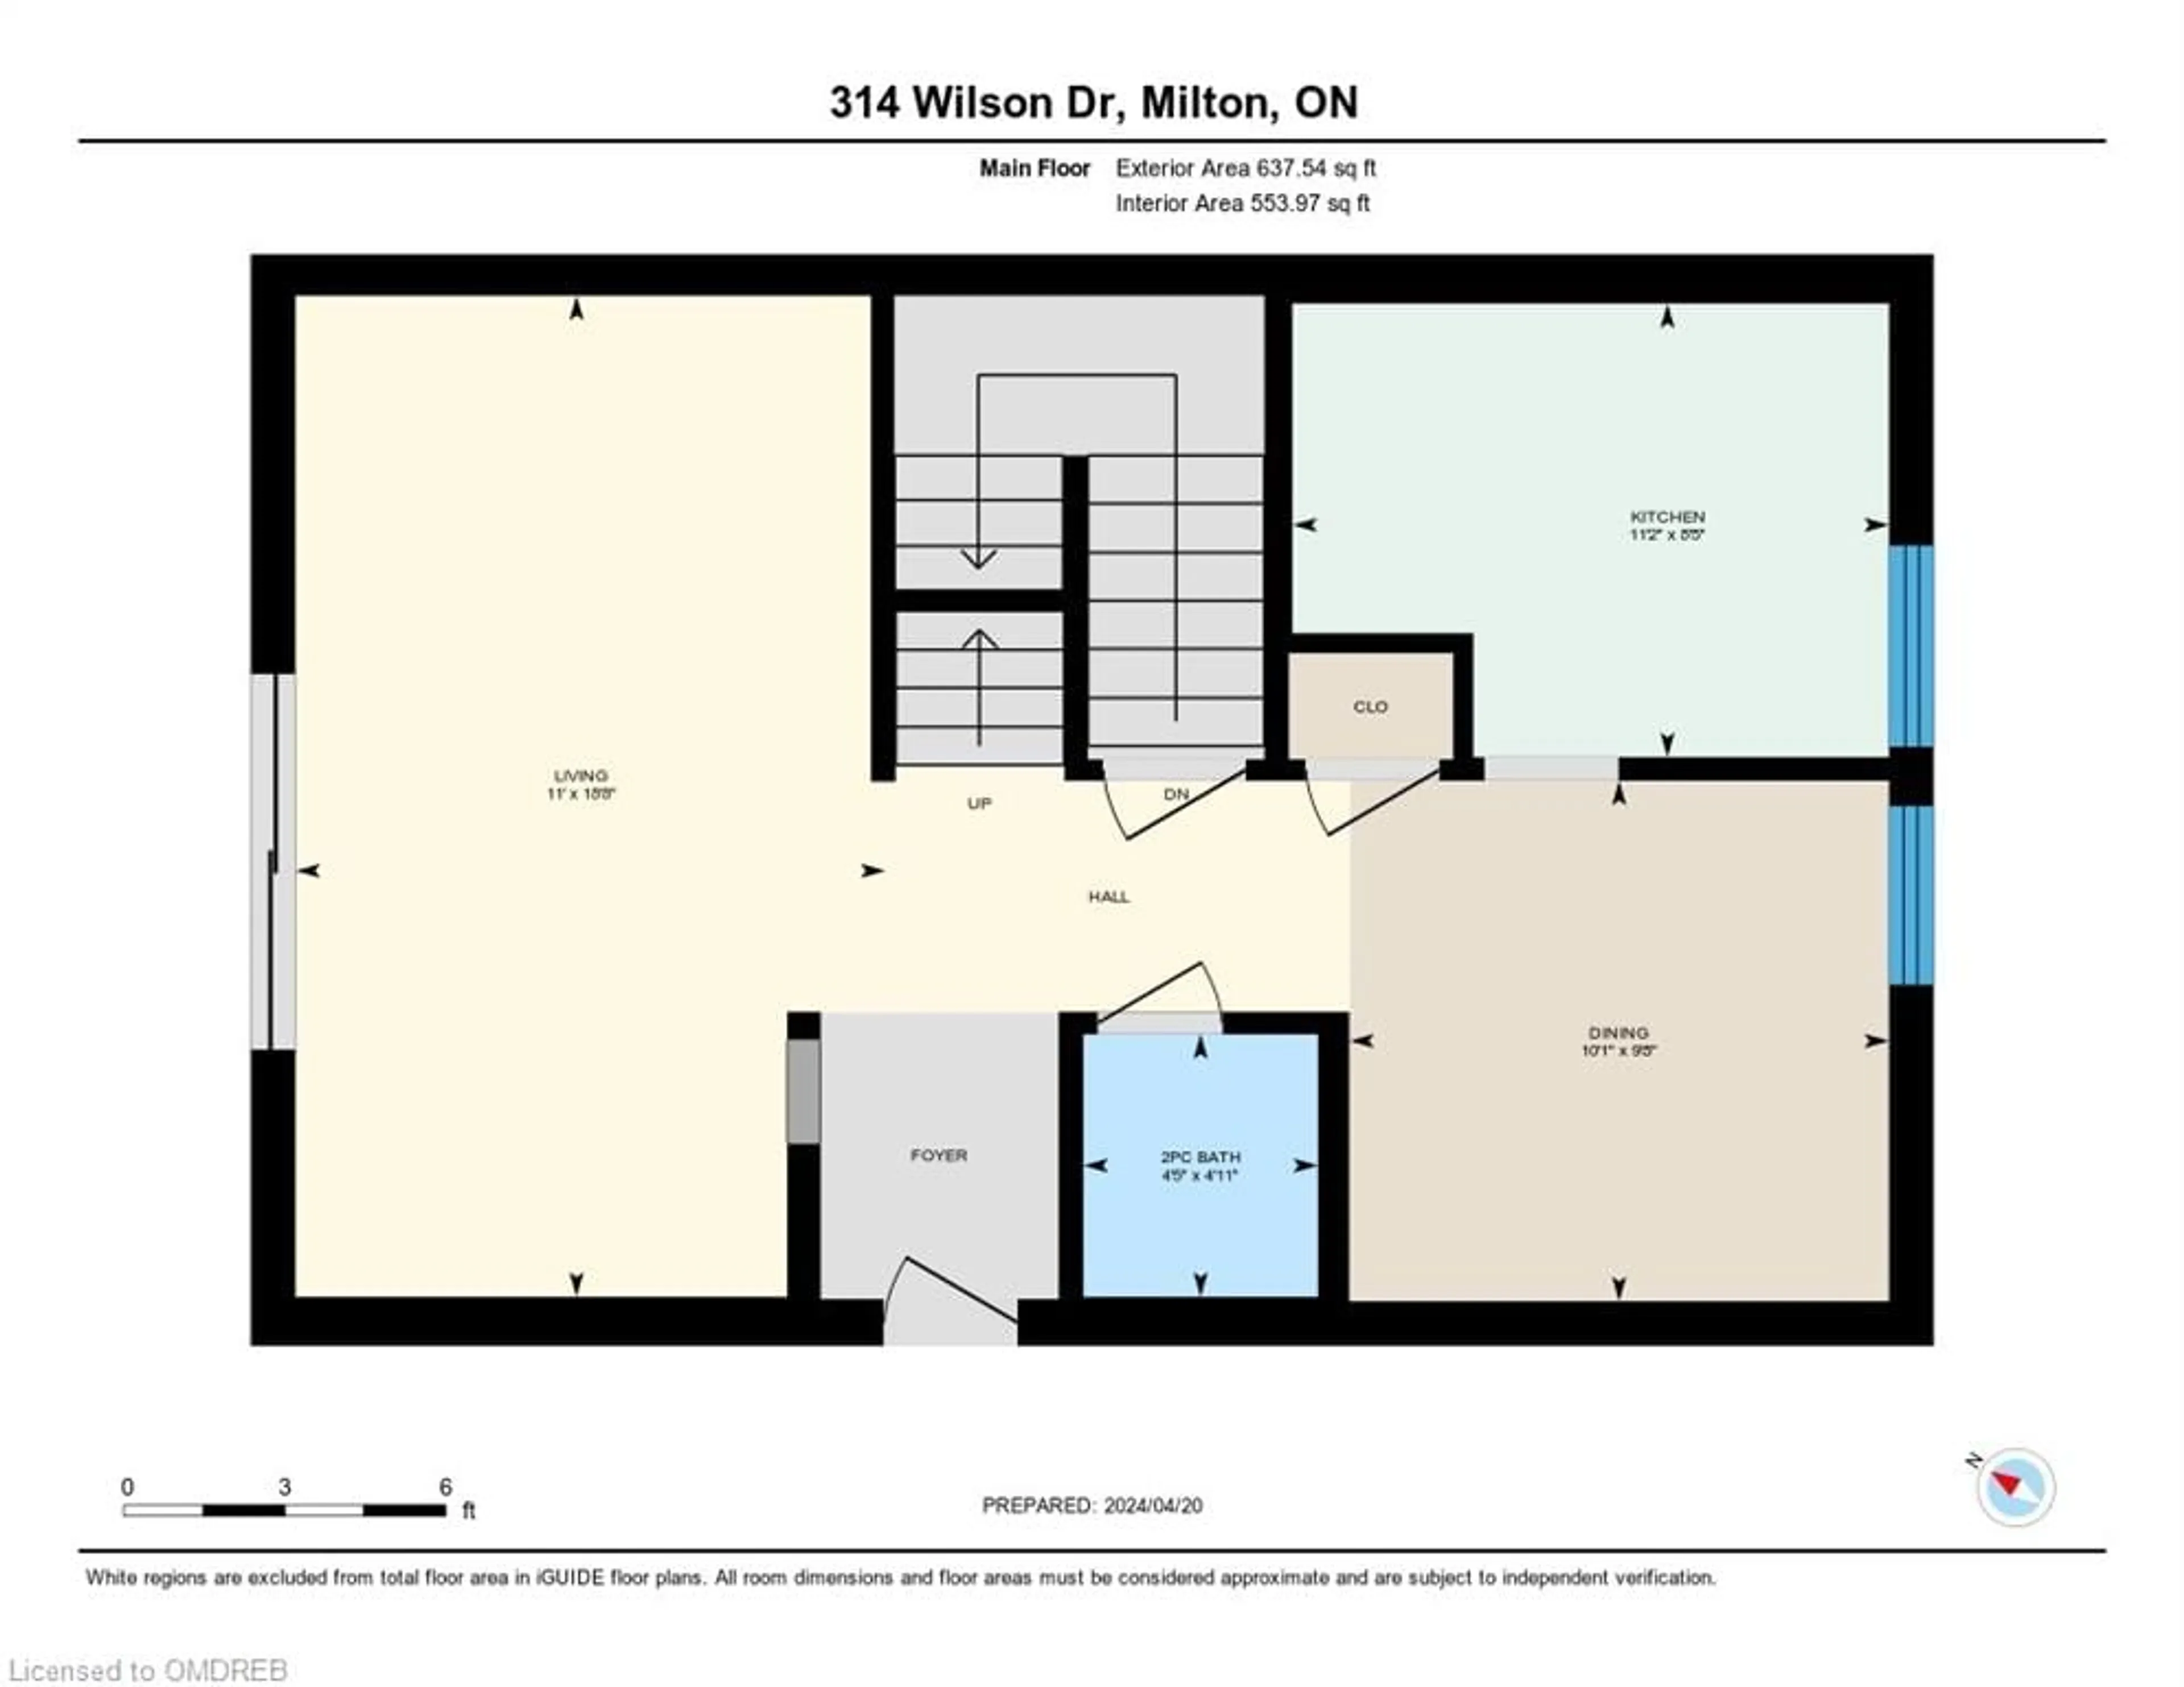 Floor plan for 314 Wilson Dr, Milton Ontario L9T 3K2